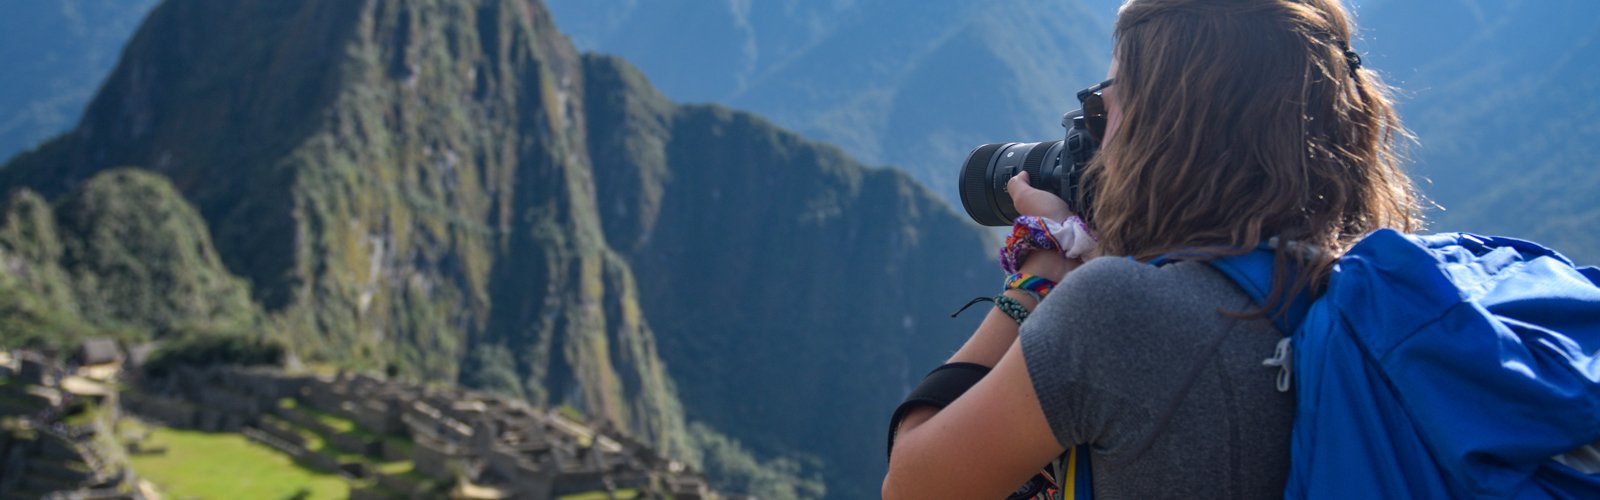 Peru: Service Through the Lens™